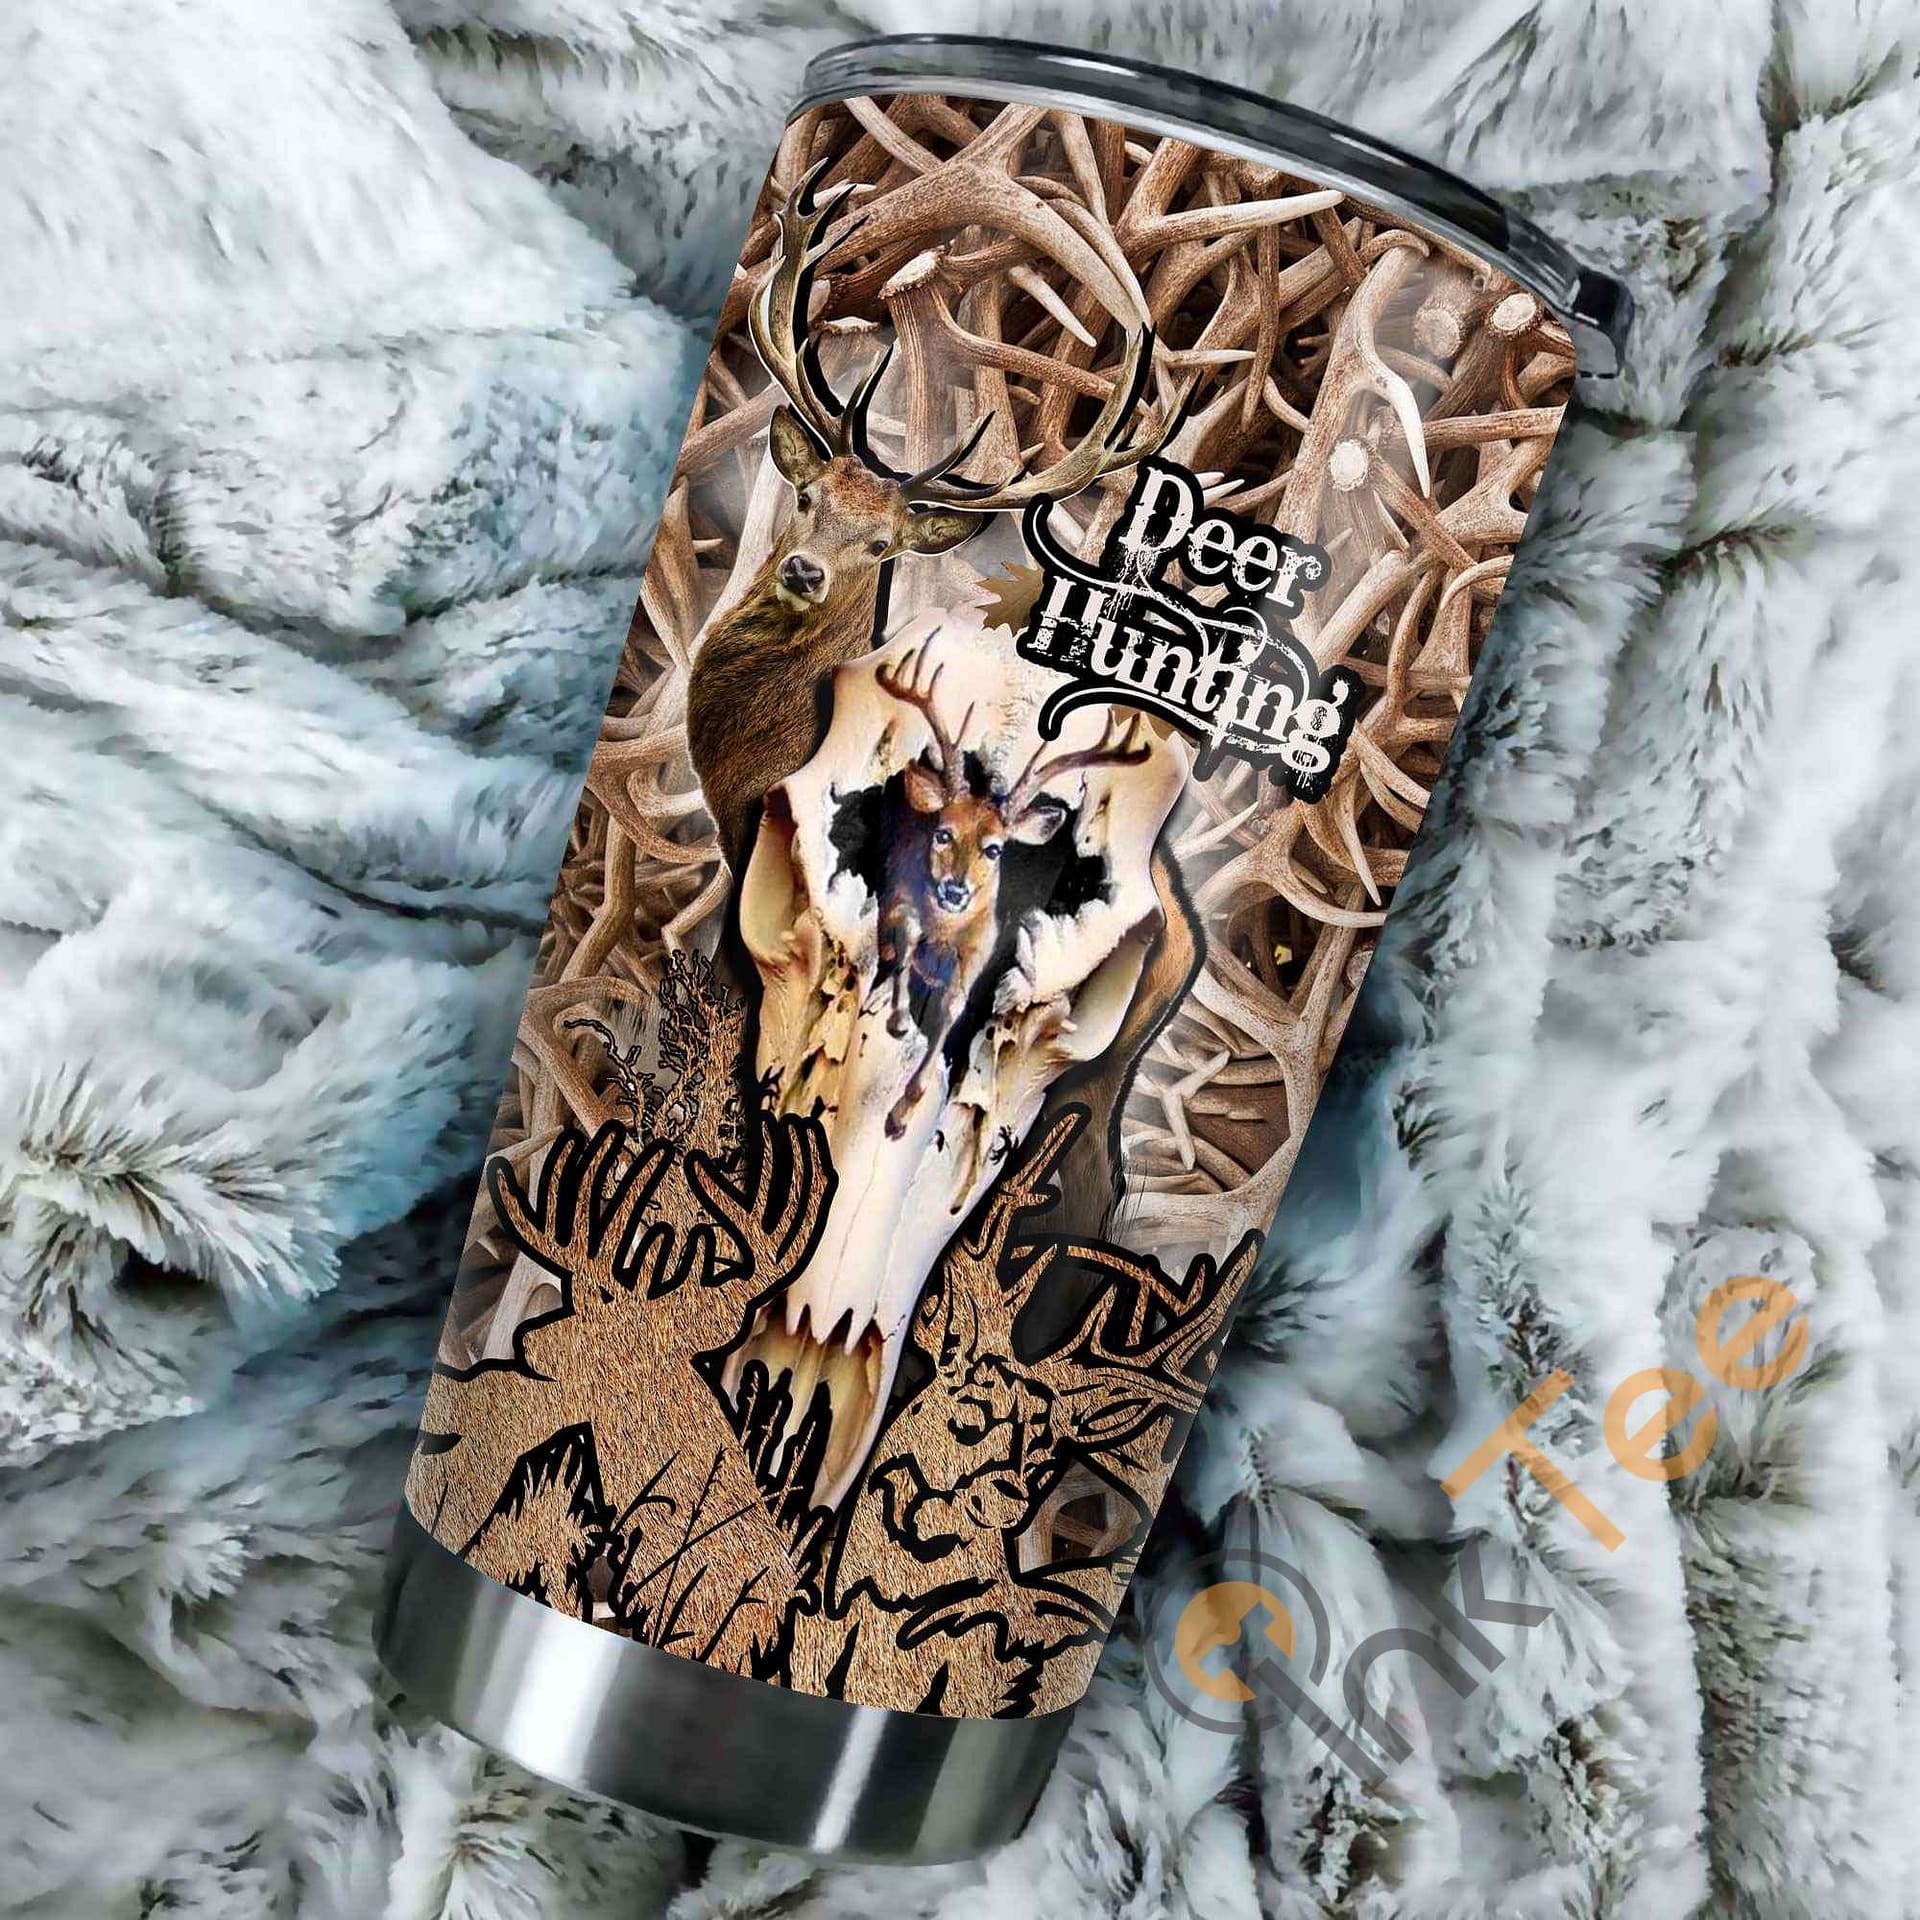 Deer Hunting Amazon Best Seller Sku 3802 Stainless Steel Tumbler